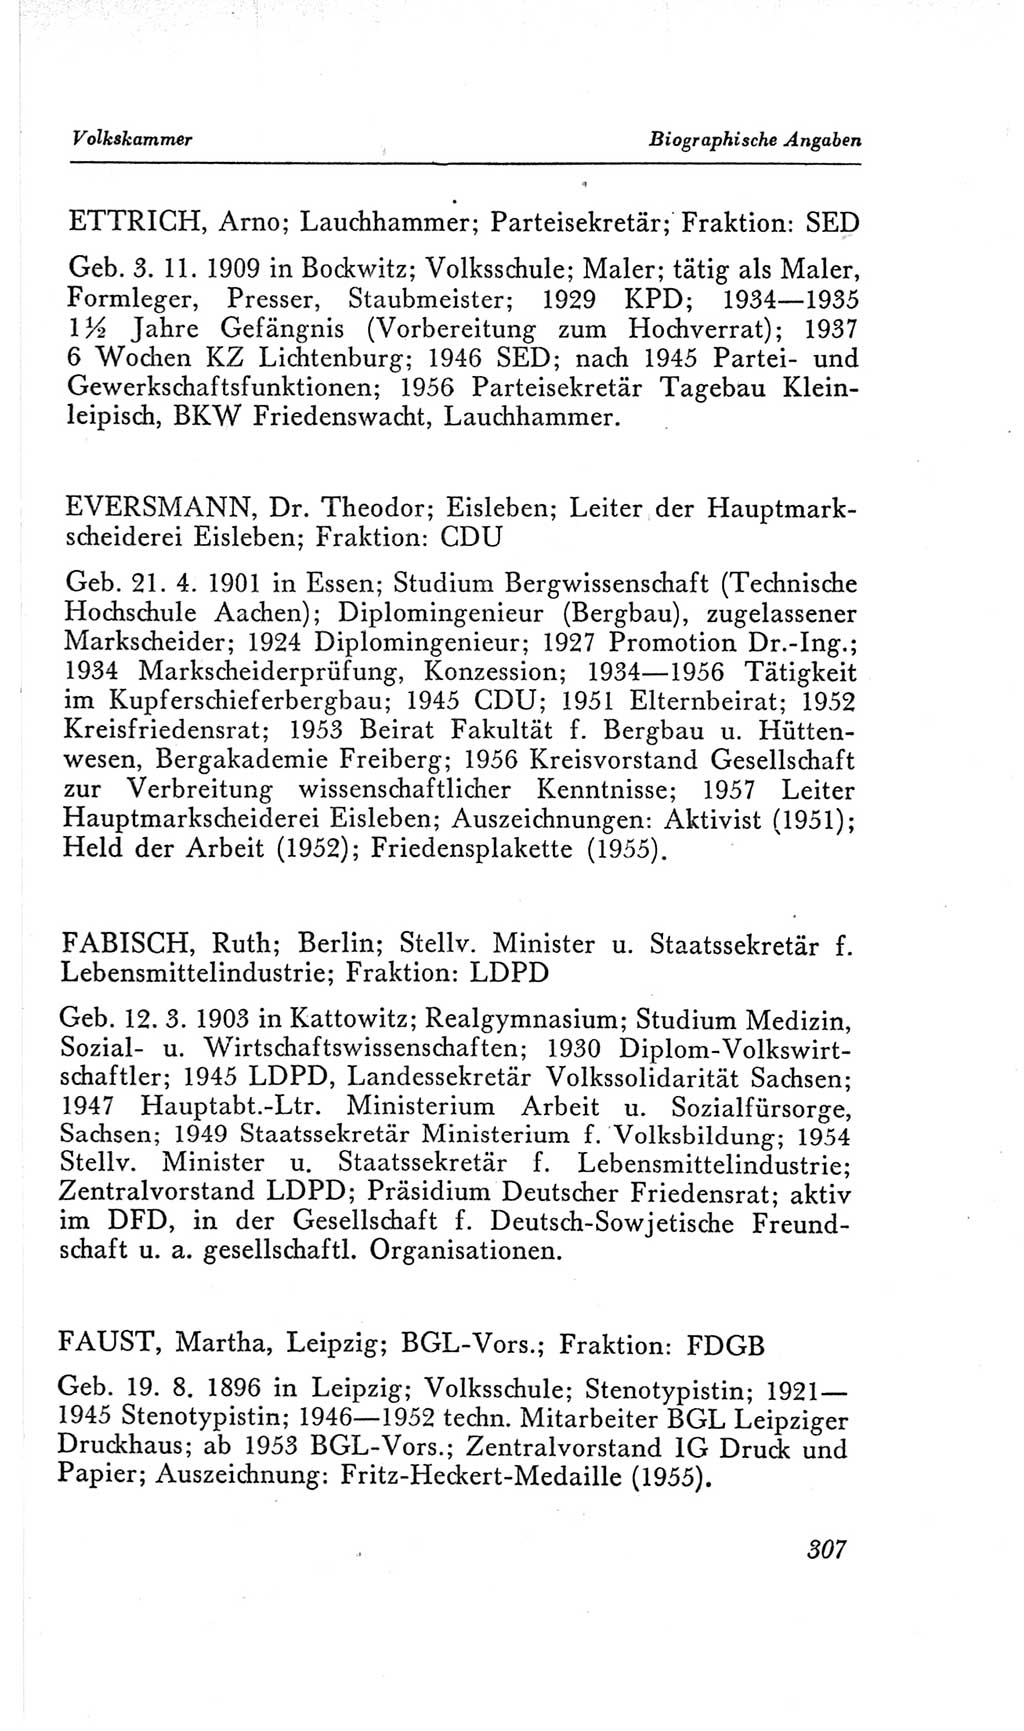 Handbuch der Volkskammer (VK) der Deutschen Demokratischen Republik (DDR), 2. Wahlperiode 1954-1958, Seite 307 (Hdb. VK. DDR, 2. WP. 1954-1958, S. 307)